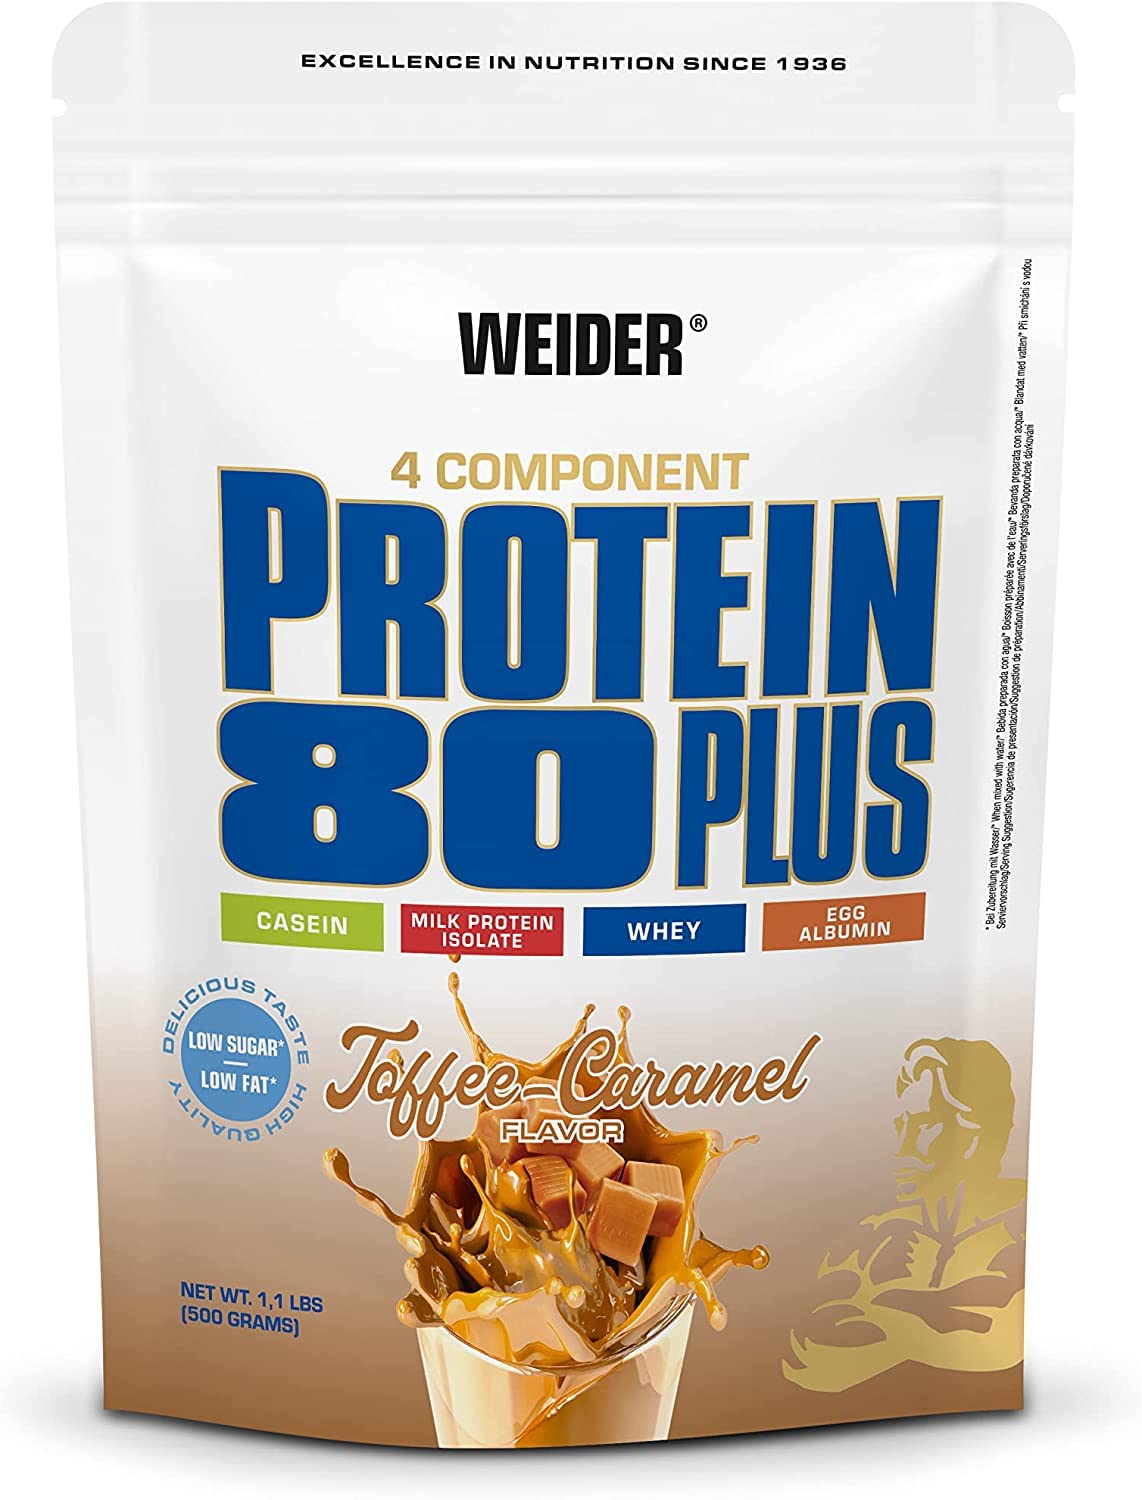 WEIDER Protein 80 Plus Mehrkomponenten Protein Pulver, Eiweißpulver für cremige, unverschämt leckere Eiweiß Shakes, Kombination aus Whey, Casein, Milchprotein-Isolat & Ei-Protein, Toffee-Karamel, 500g